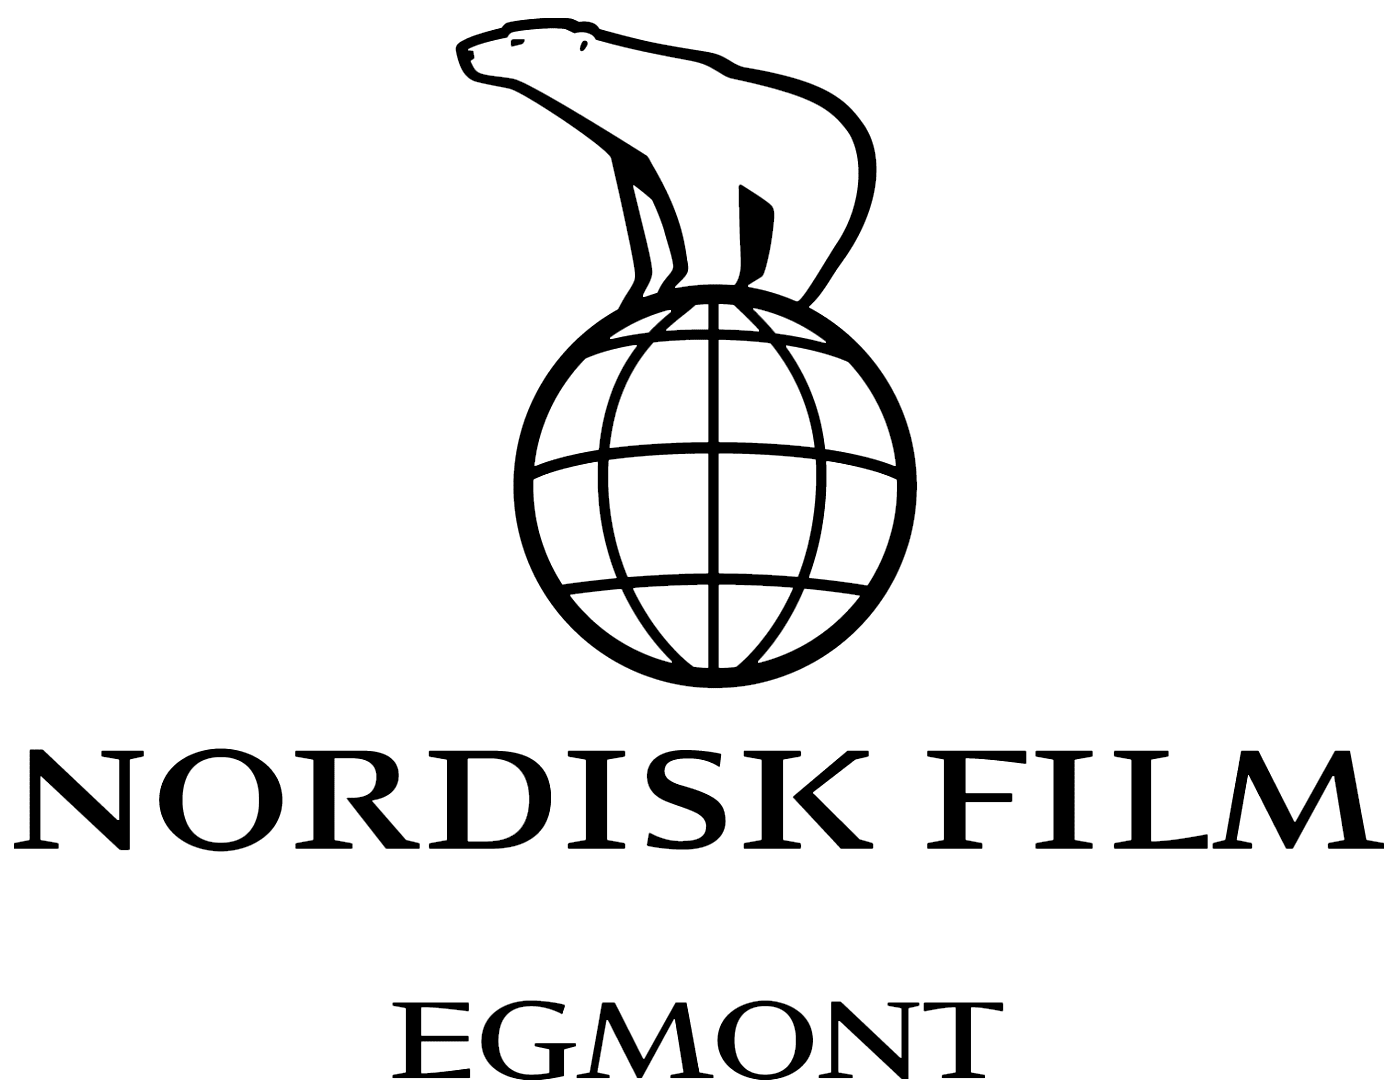 Nordisk Film logo in black